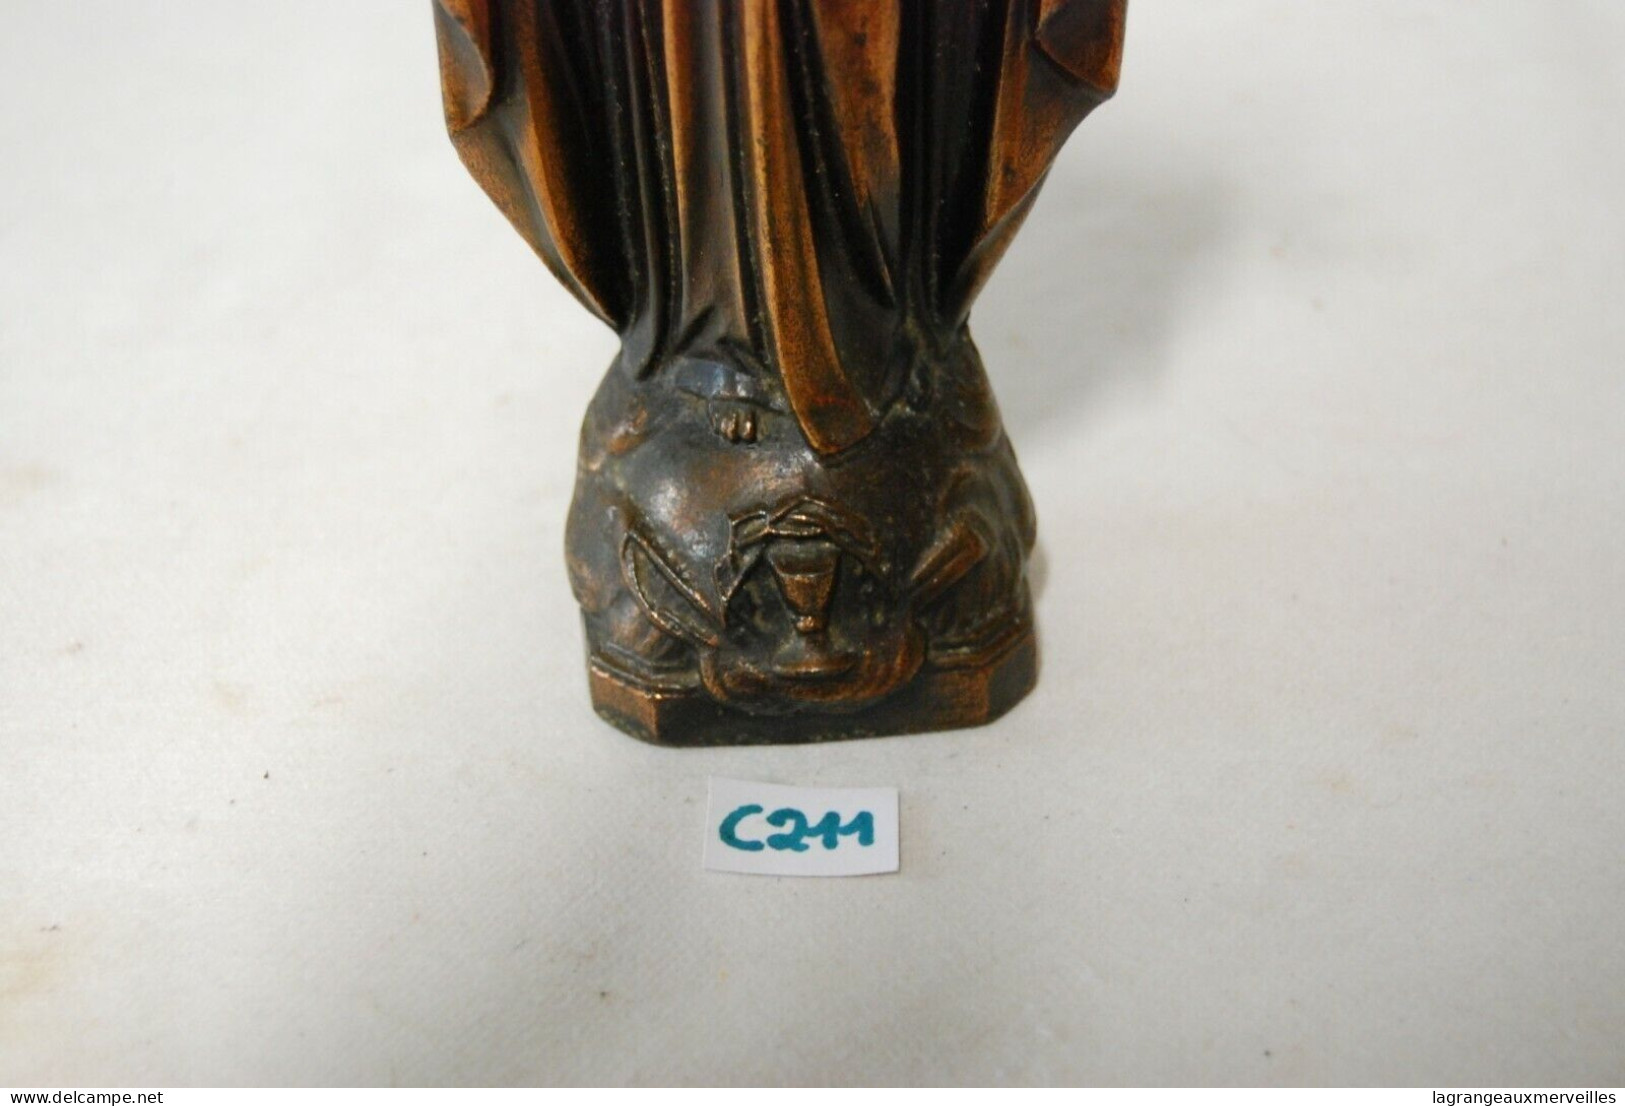 C211 Statuette Du Christ - Jésus - Objet Religieux - Religious Art